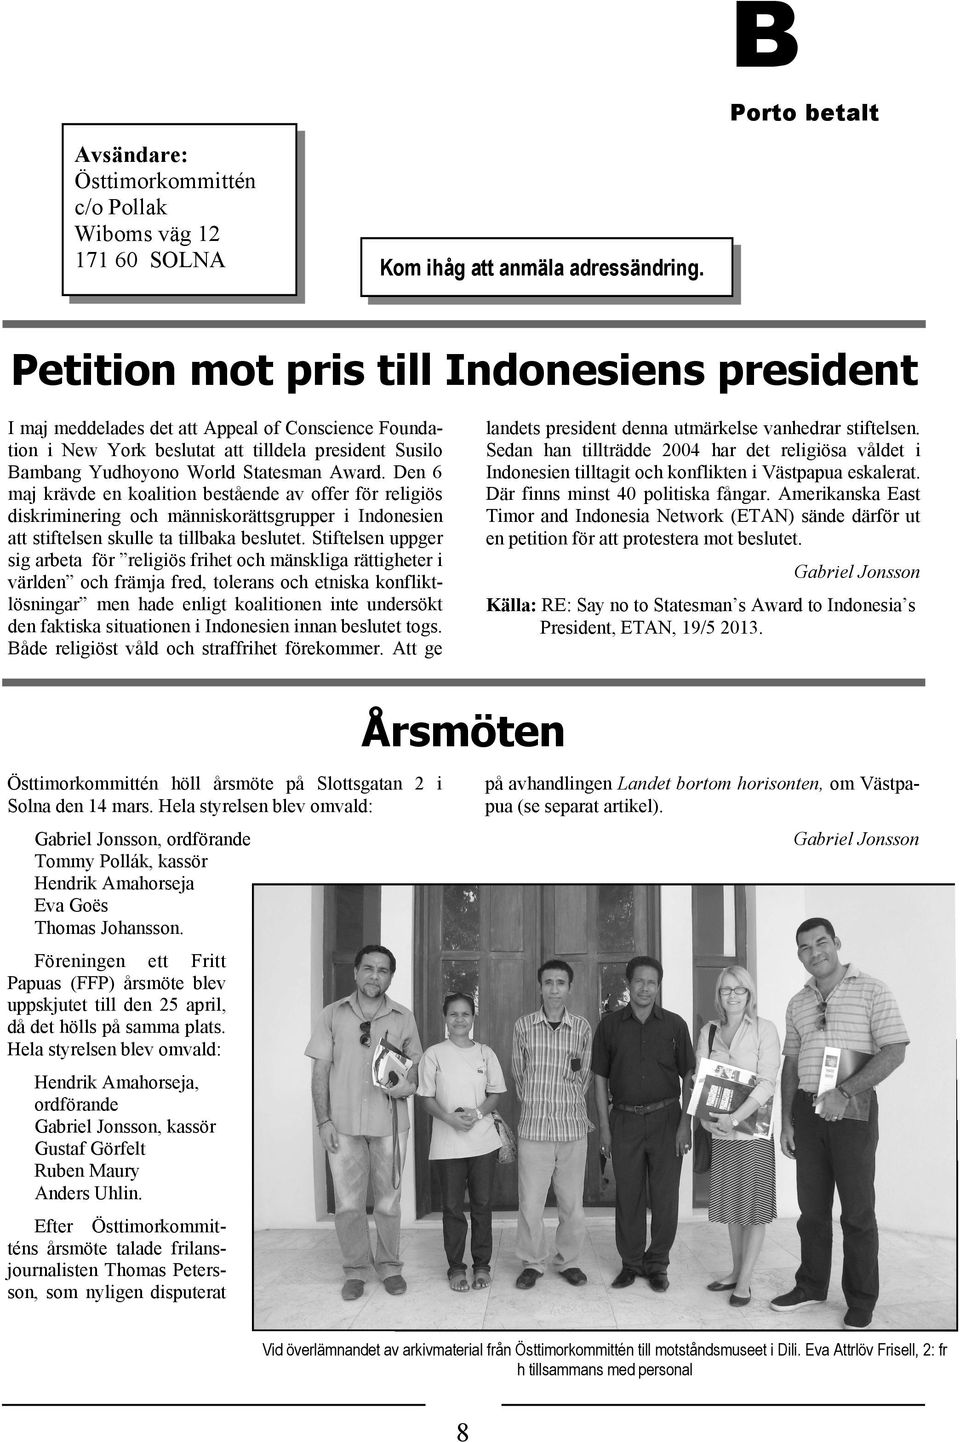 Award. Den 6 maj krävde en koalition bestående av offer för religiös diskriminering och människorättsgrupper i Indonesien att stiftelsen skulle ta tillbaka beslutet.